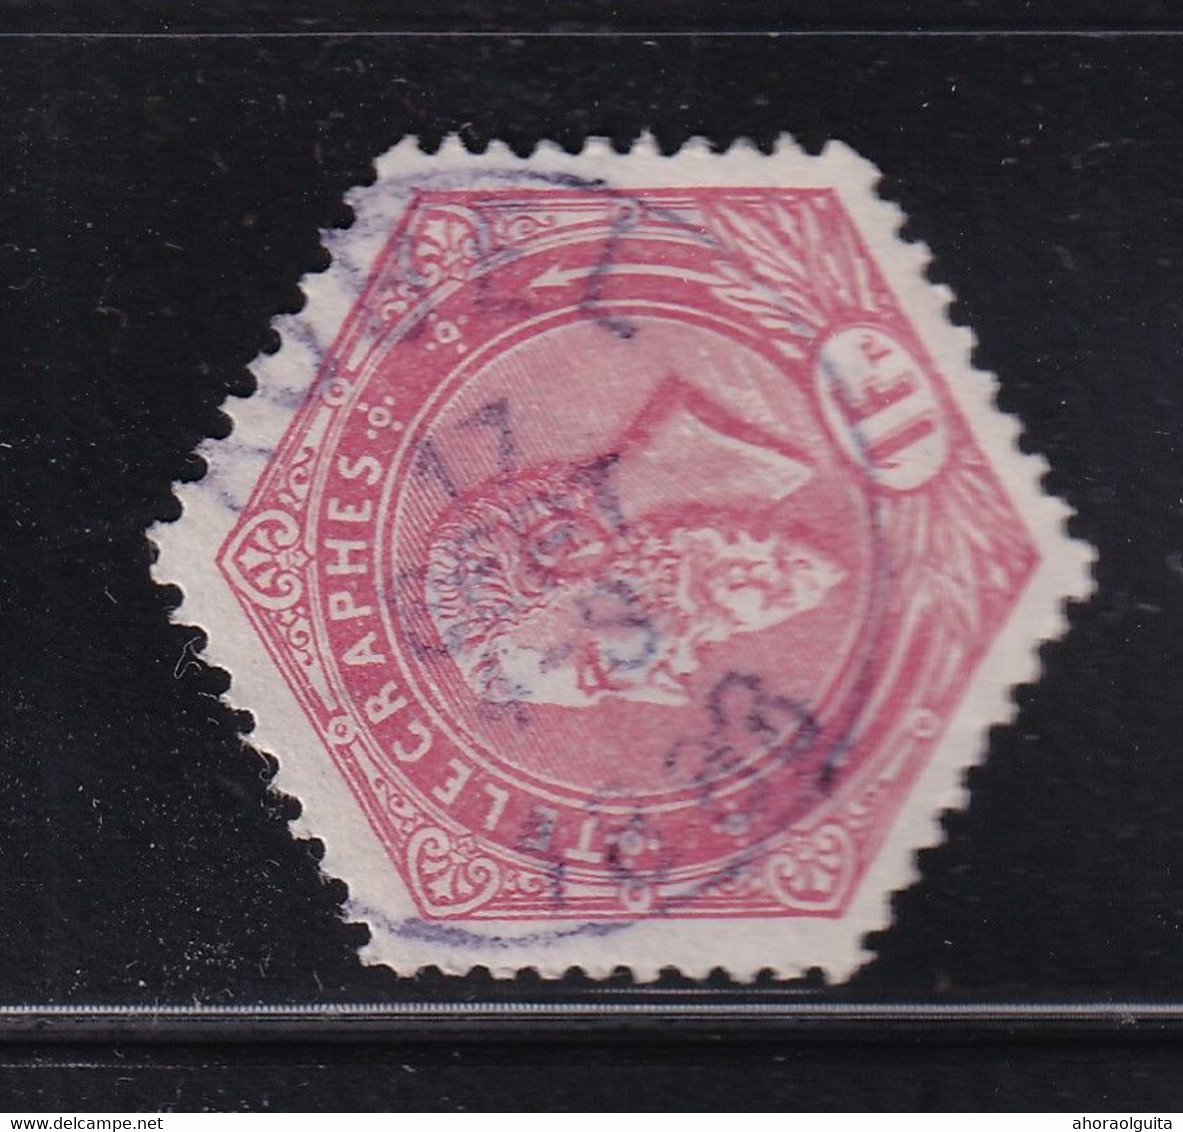 DDDD 411  --  Timbre Télégraphe Cachet Postal Simple Cercle AUBEL 1888 - Telegraphenmarken [TG]